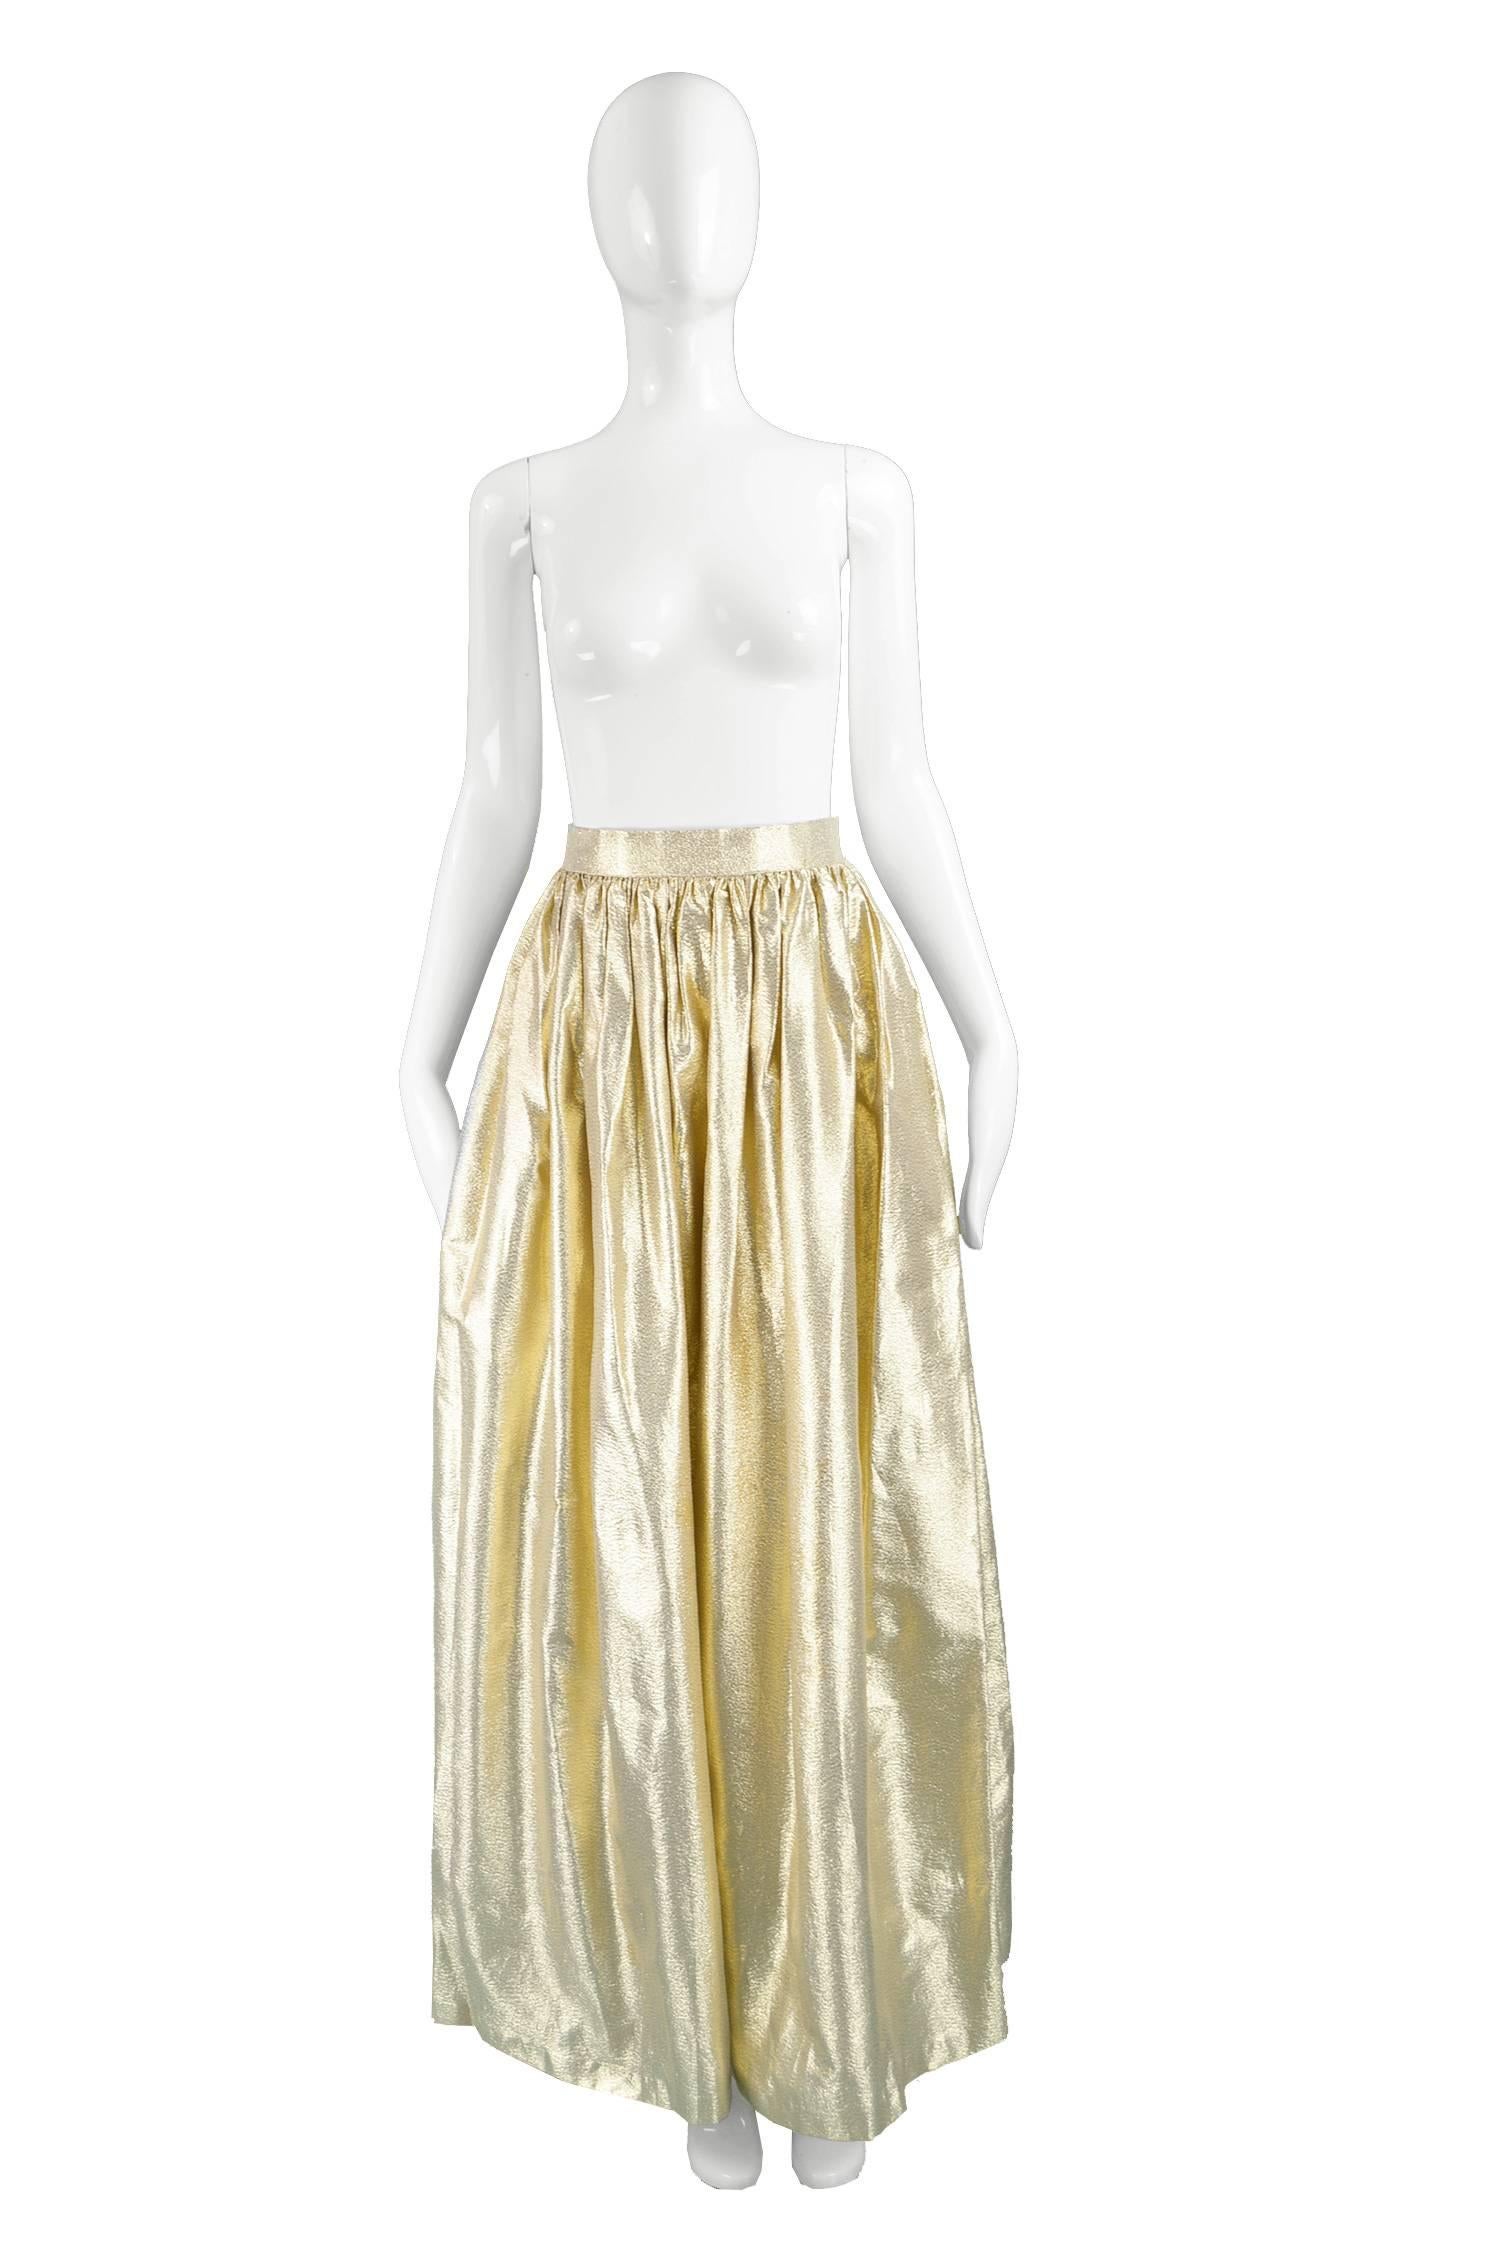 Albert Capraro Vintage Metallic Gold Lamé Maxi Skirt, 1980s

Estimated Size: UK 8/ US 4/ EU 36. Please check measurements. 
Waist - 26” / 66cm
Hips - Free
Length (Waist to Hem) - 42” / 106cm
 
Condition: Excellent Vintage Condition - Couple of very